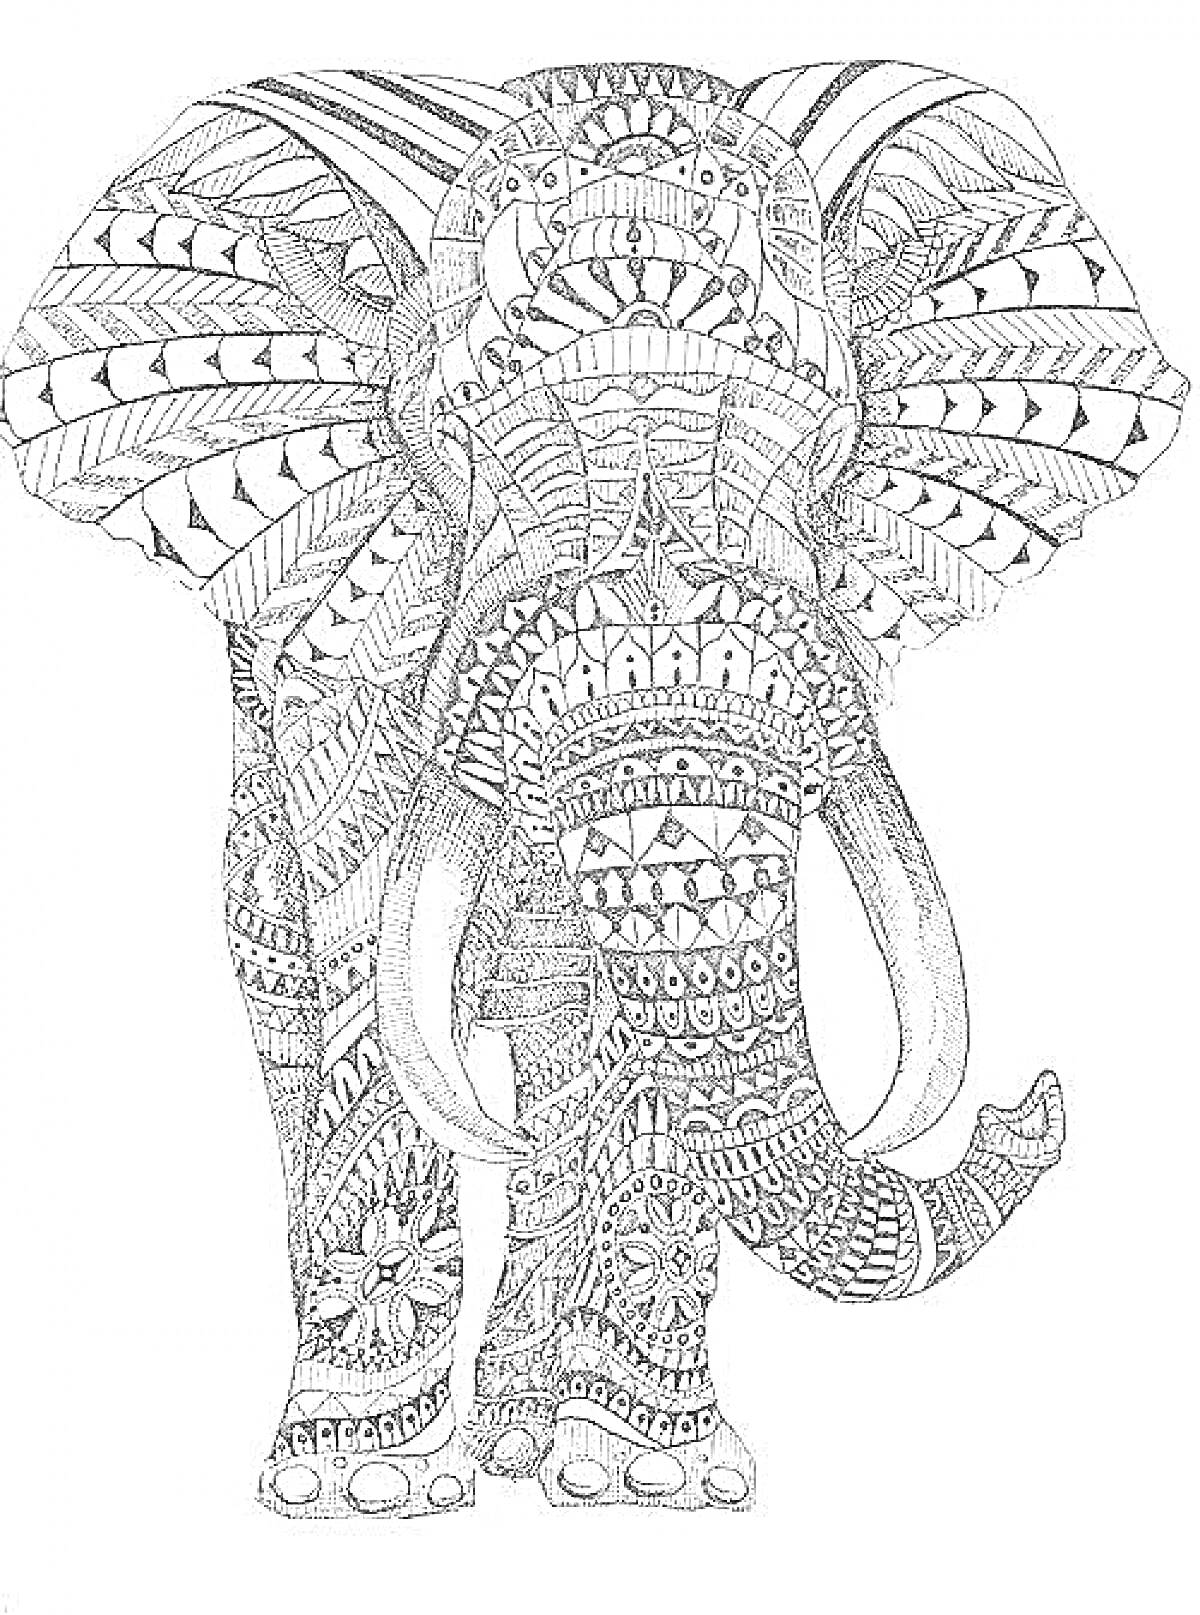 Раскраска Антистресс раскраска: слон с узорами в стиле зентангл, состоящий из различных геометрических и абстрактных элементов, включая листья, круги, линии и треугольники.